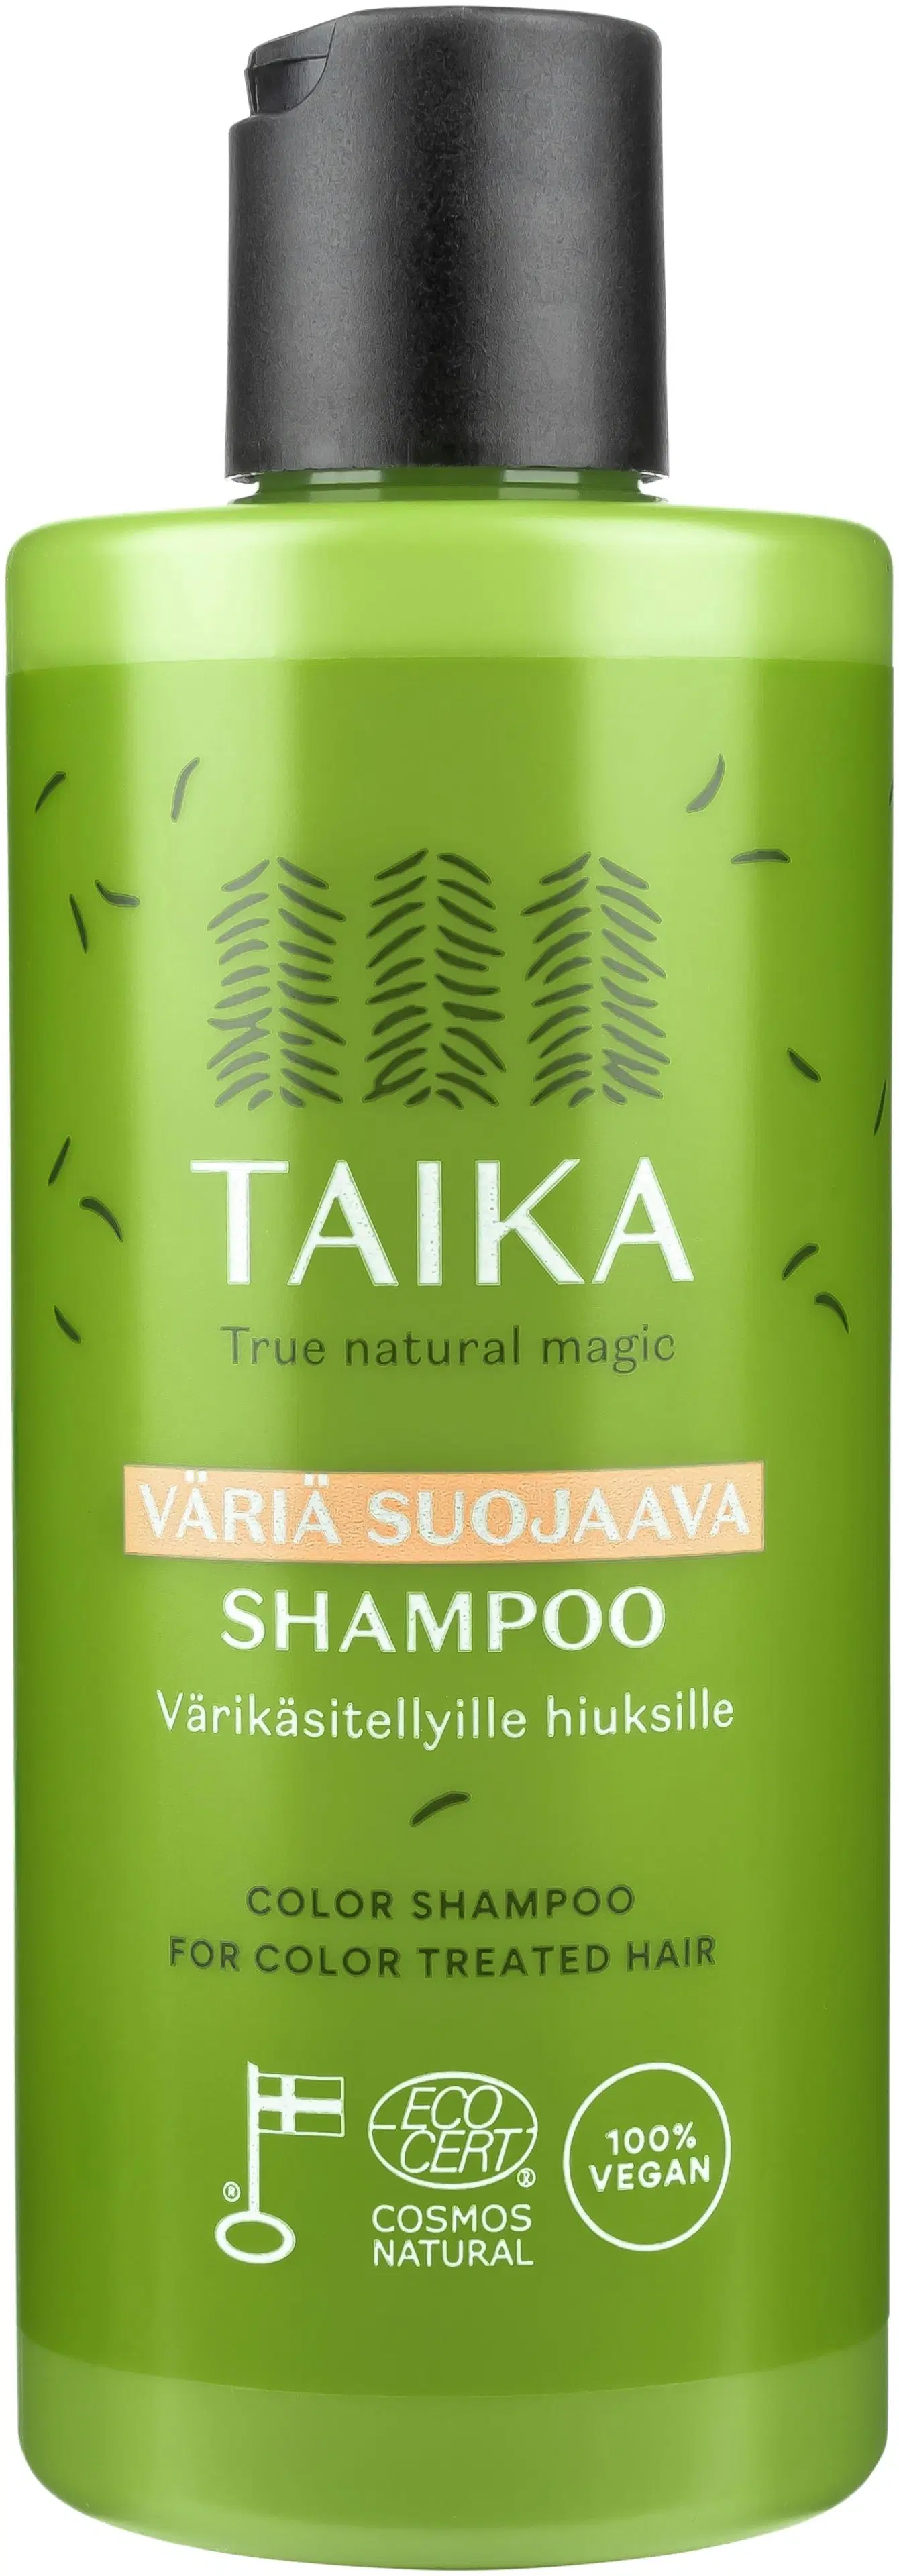 Taika Väriä suojaava shampoo ECO 250ml